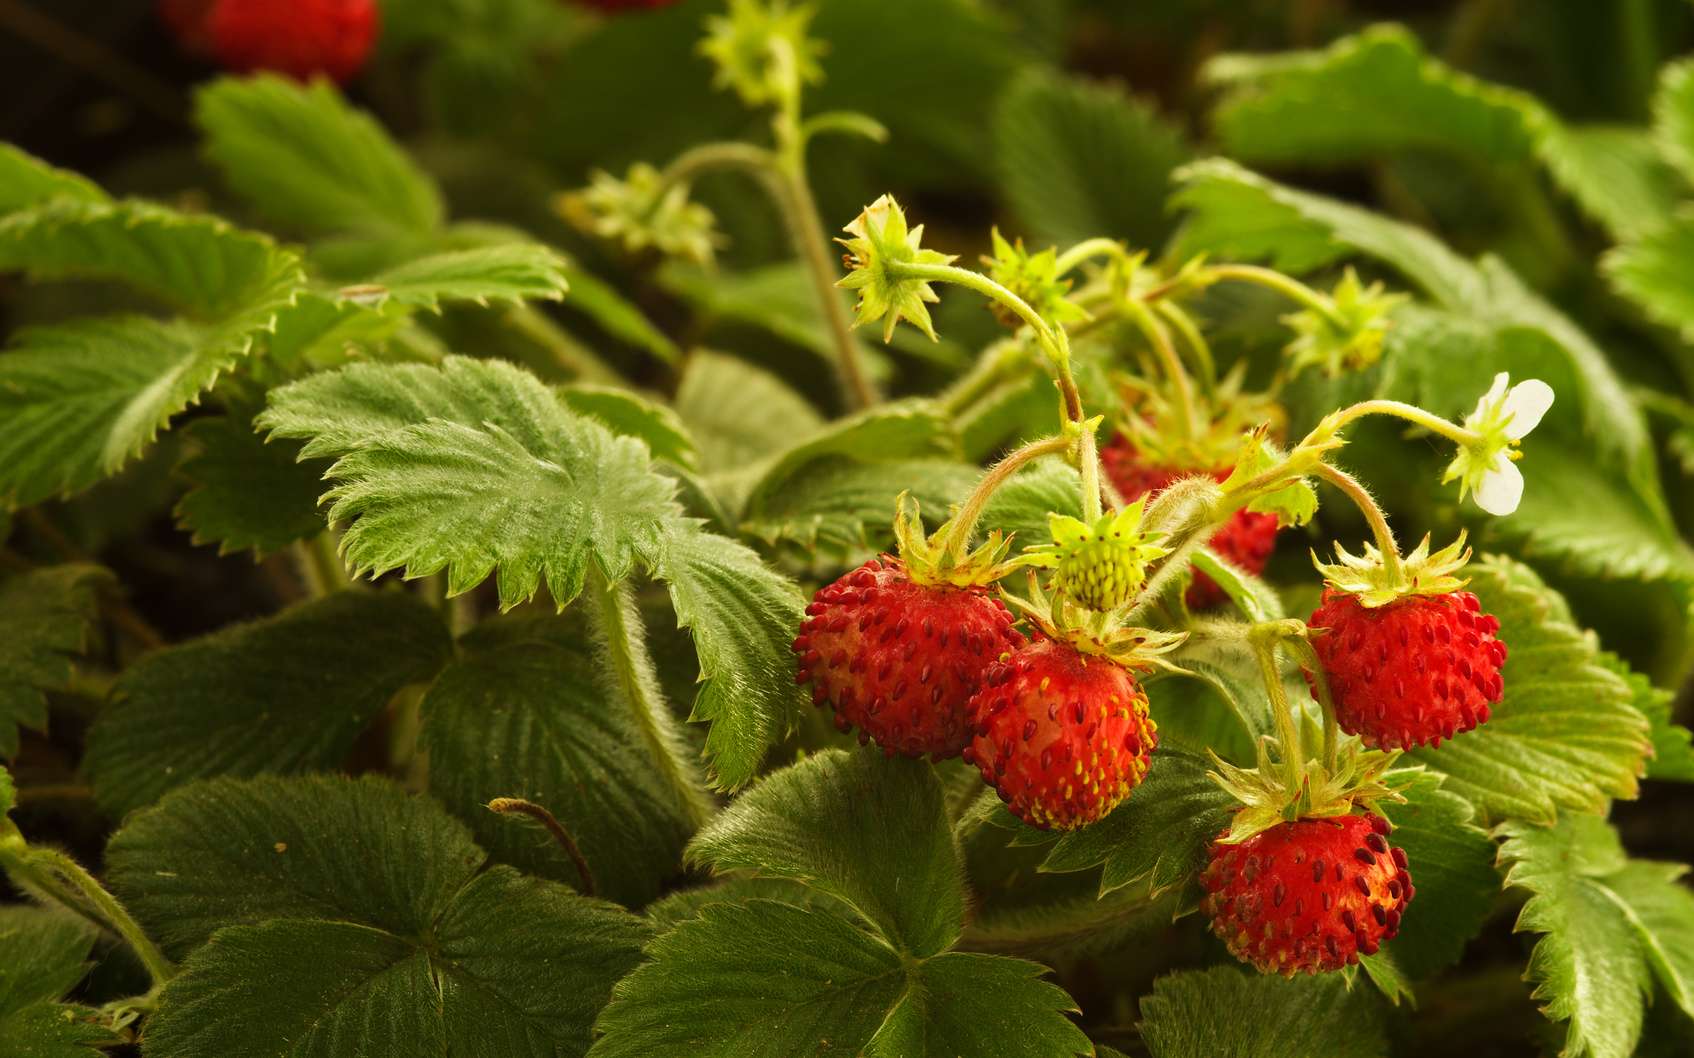 Le fraisier des bois est utilisé contre les troubles intestinaux. © Armando Frazão, fotolia